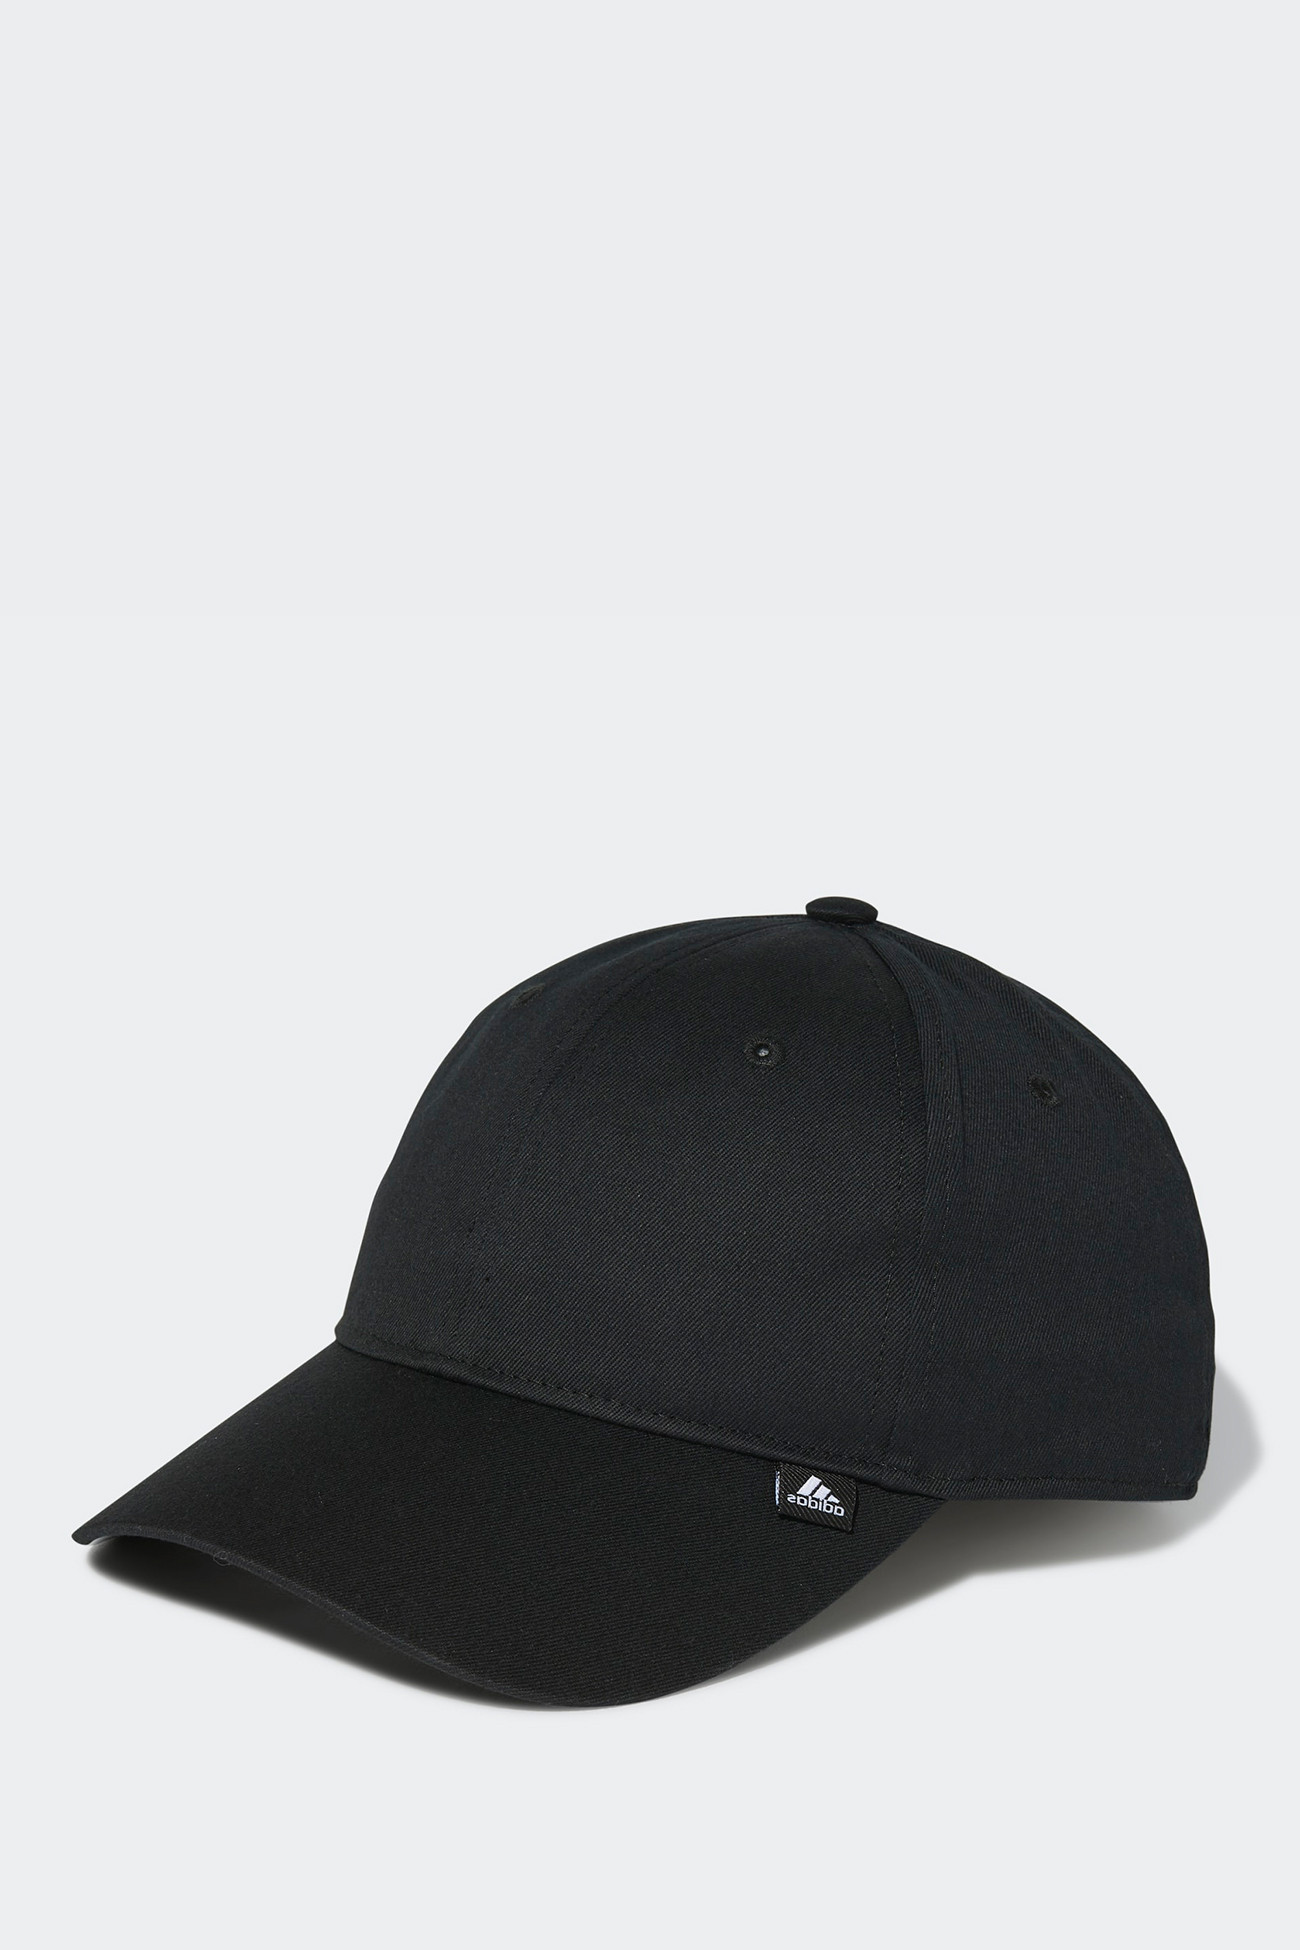 Бейсболка Adidas 3S Cap черная GN2052 изображение 2